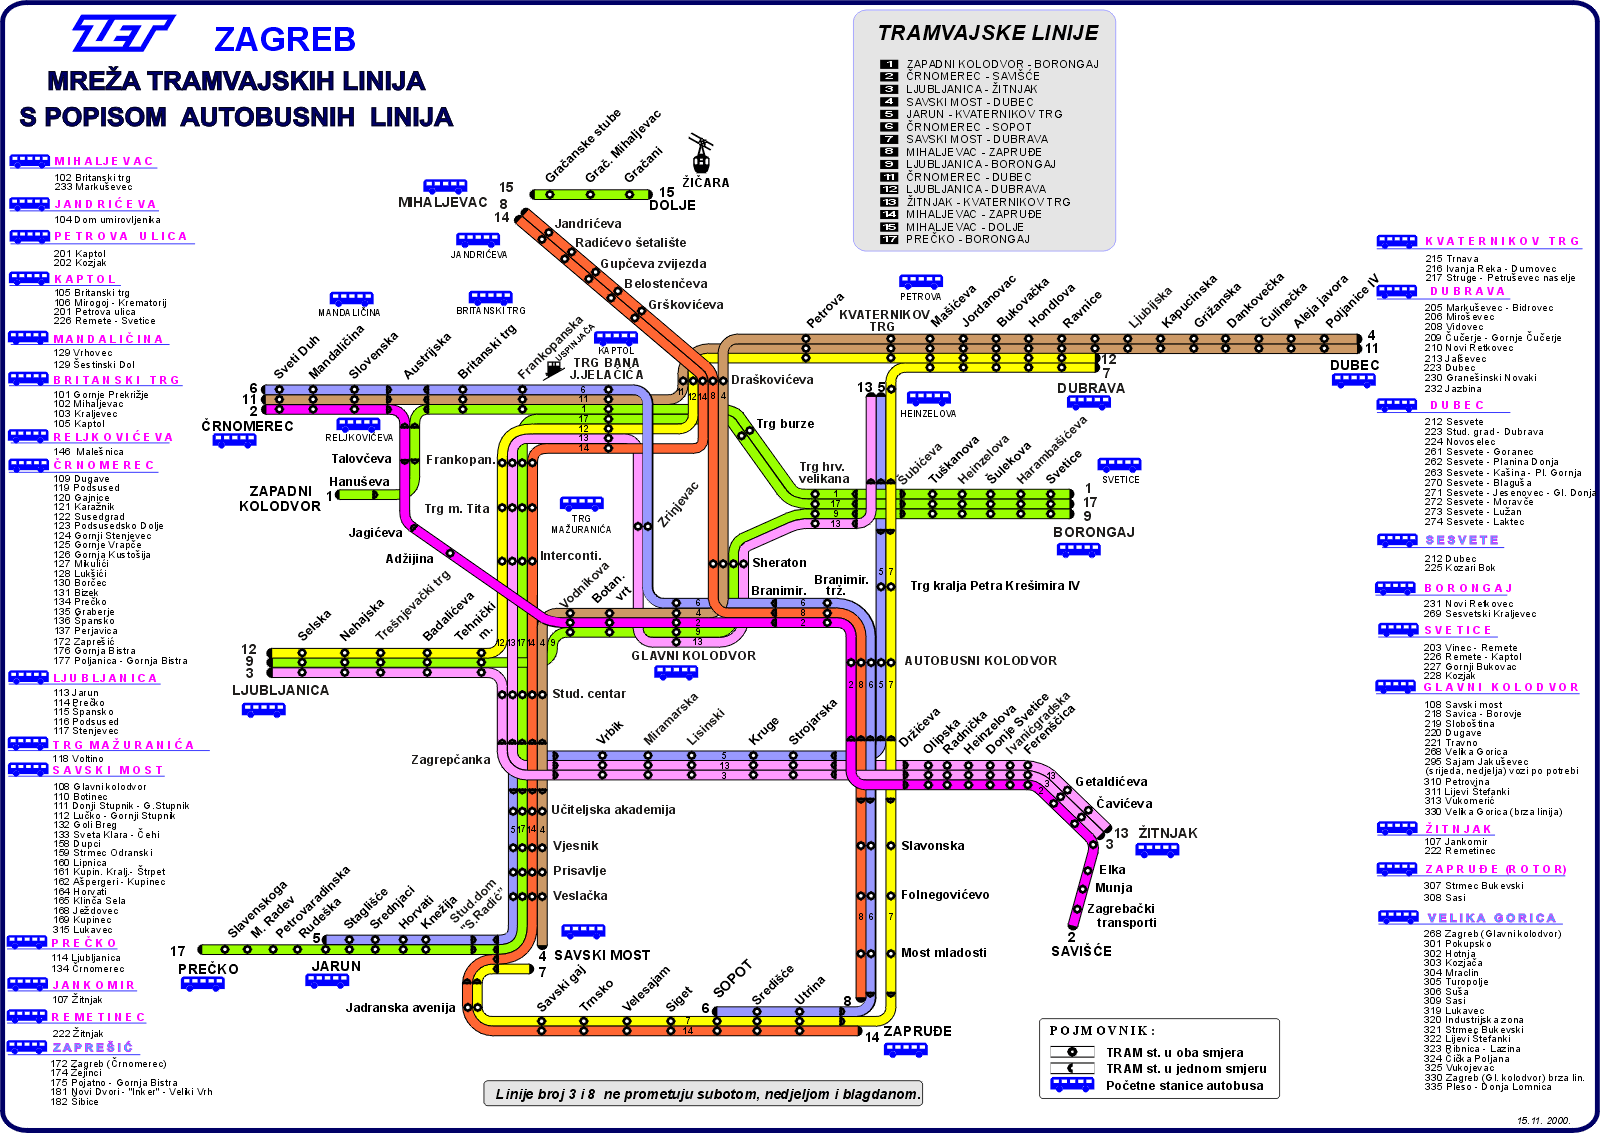 Zagreb Tram transport plan